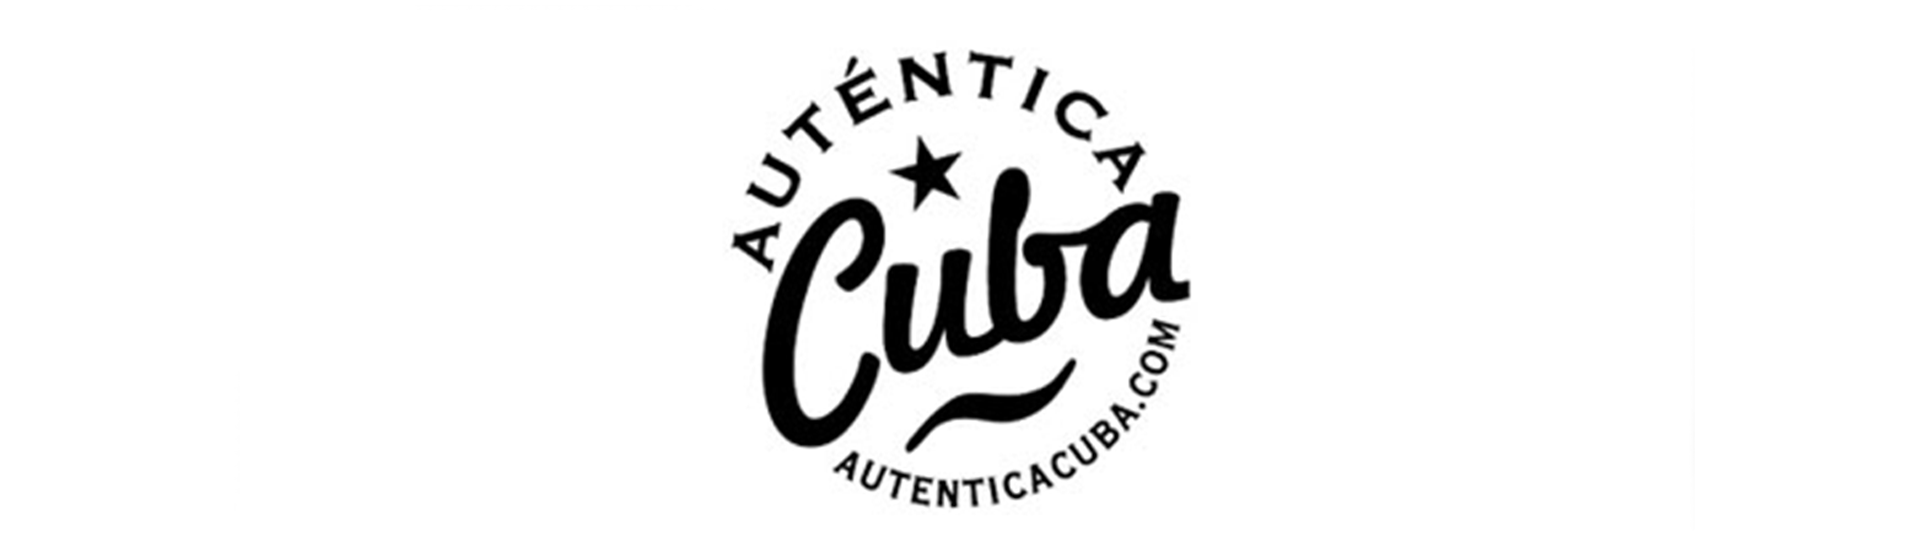 Logotipo Cuba Auténtica Cuba